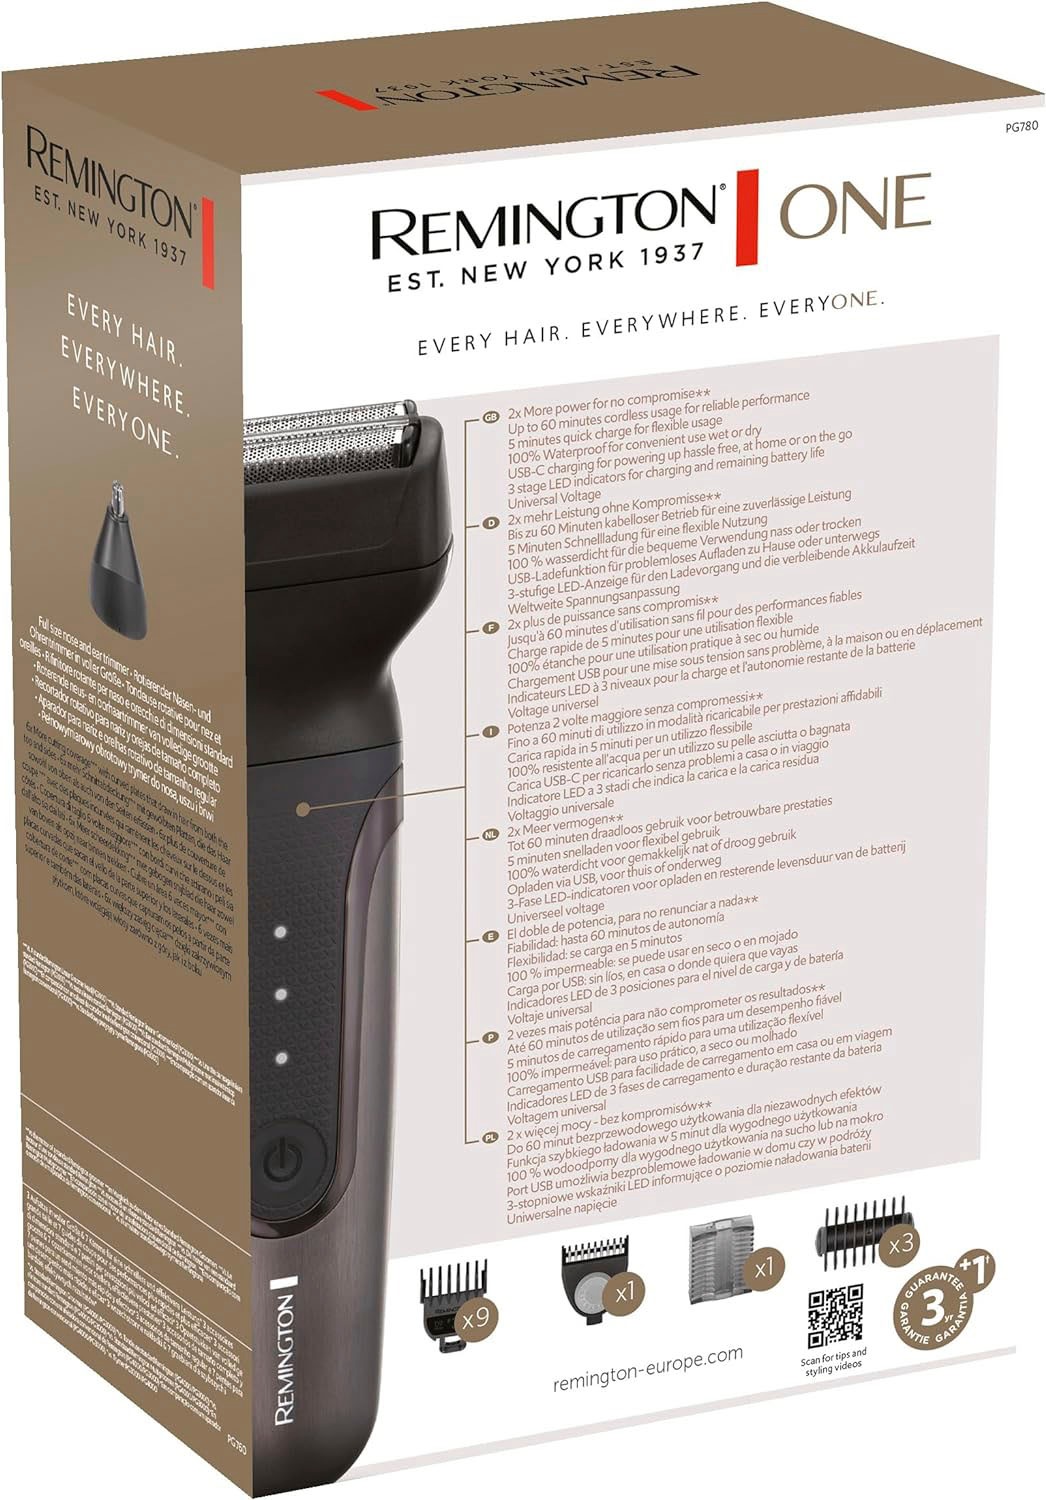 Remington Haar- und Bartschneider »PG780 One Totalbody Multigroomer«, 4 Aufsätze, inkl. 18 Aufsteckköpfe/-kämme